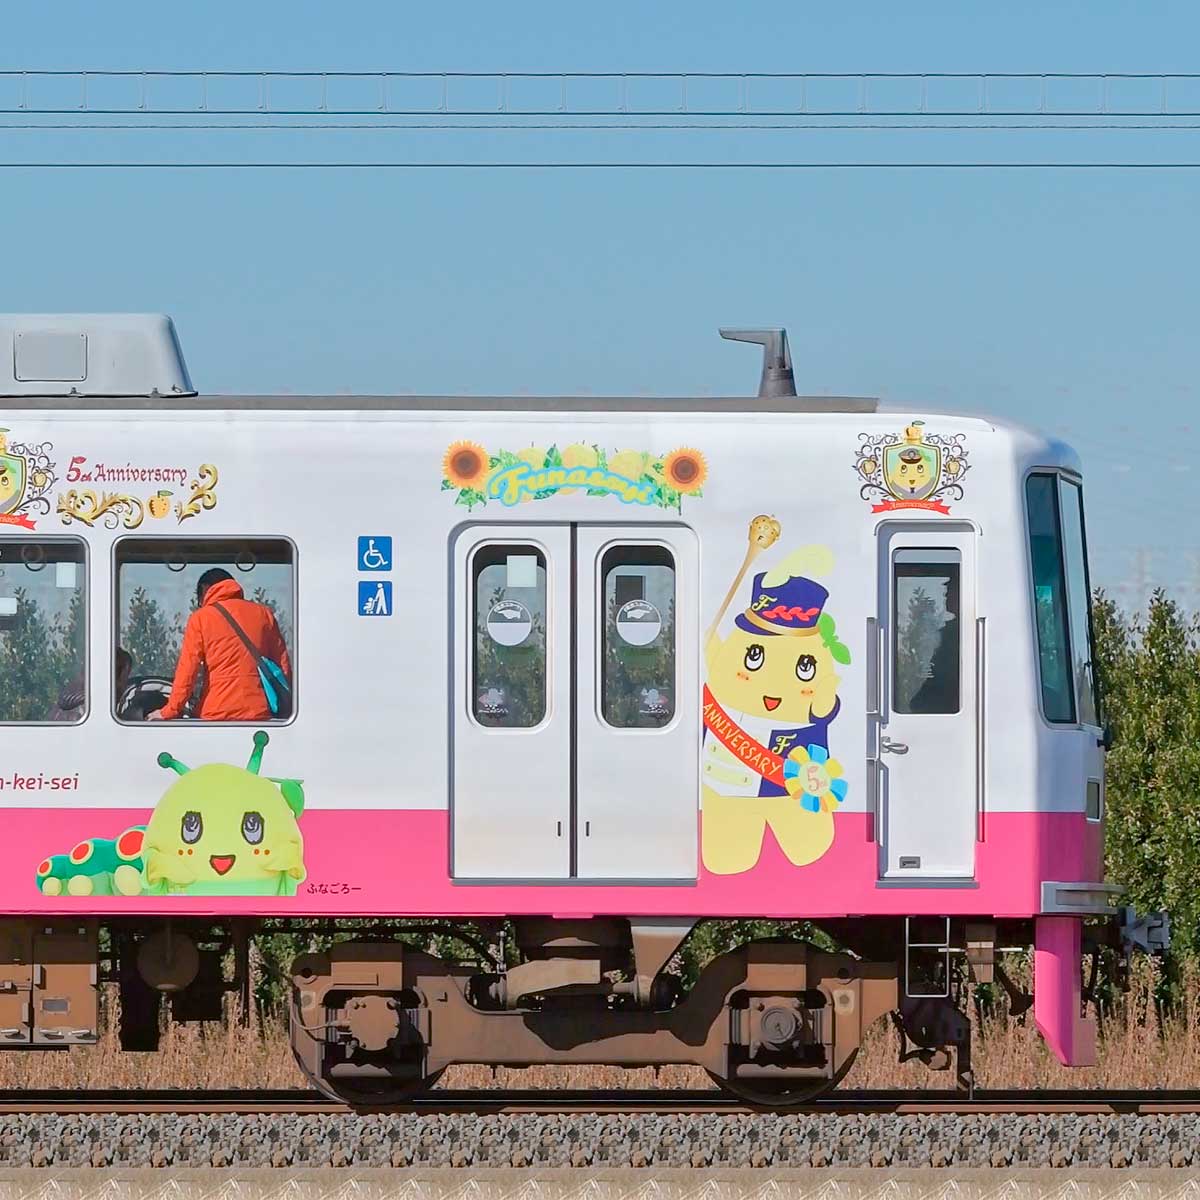 新京成00形クハ16 6 ふなっしートレイン の側面写真 Railfile Jp 鉄道車両サイドビューの図鑑